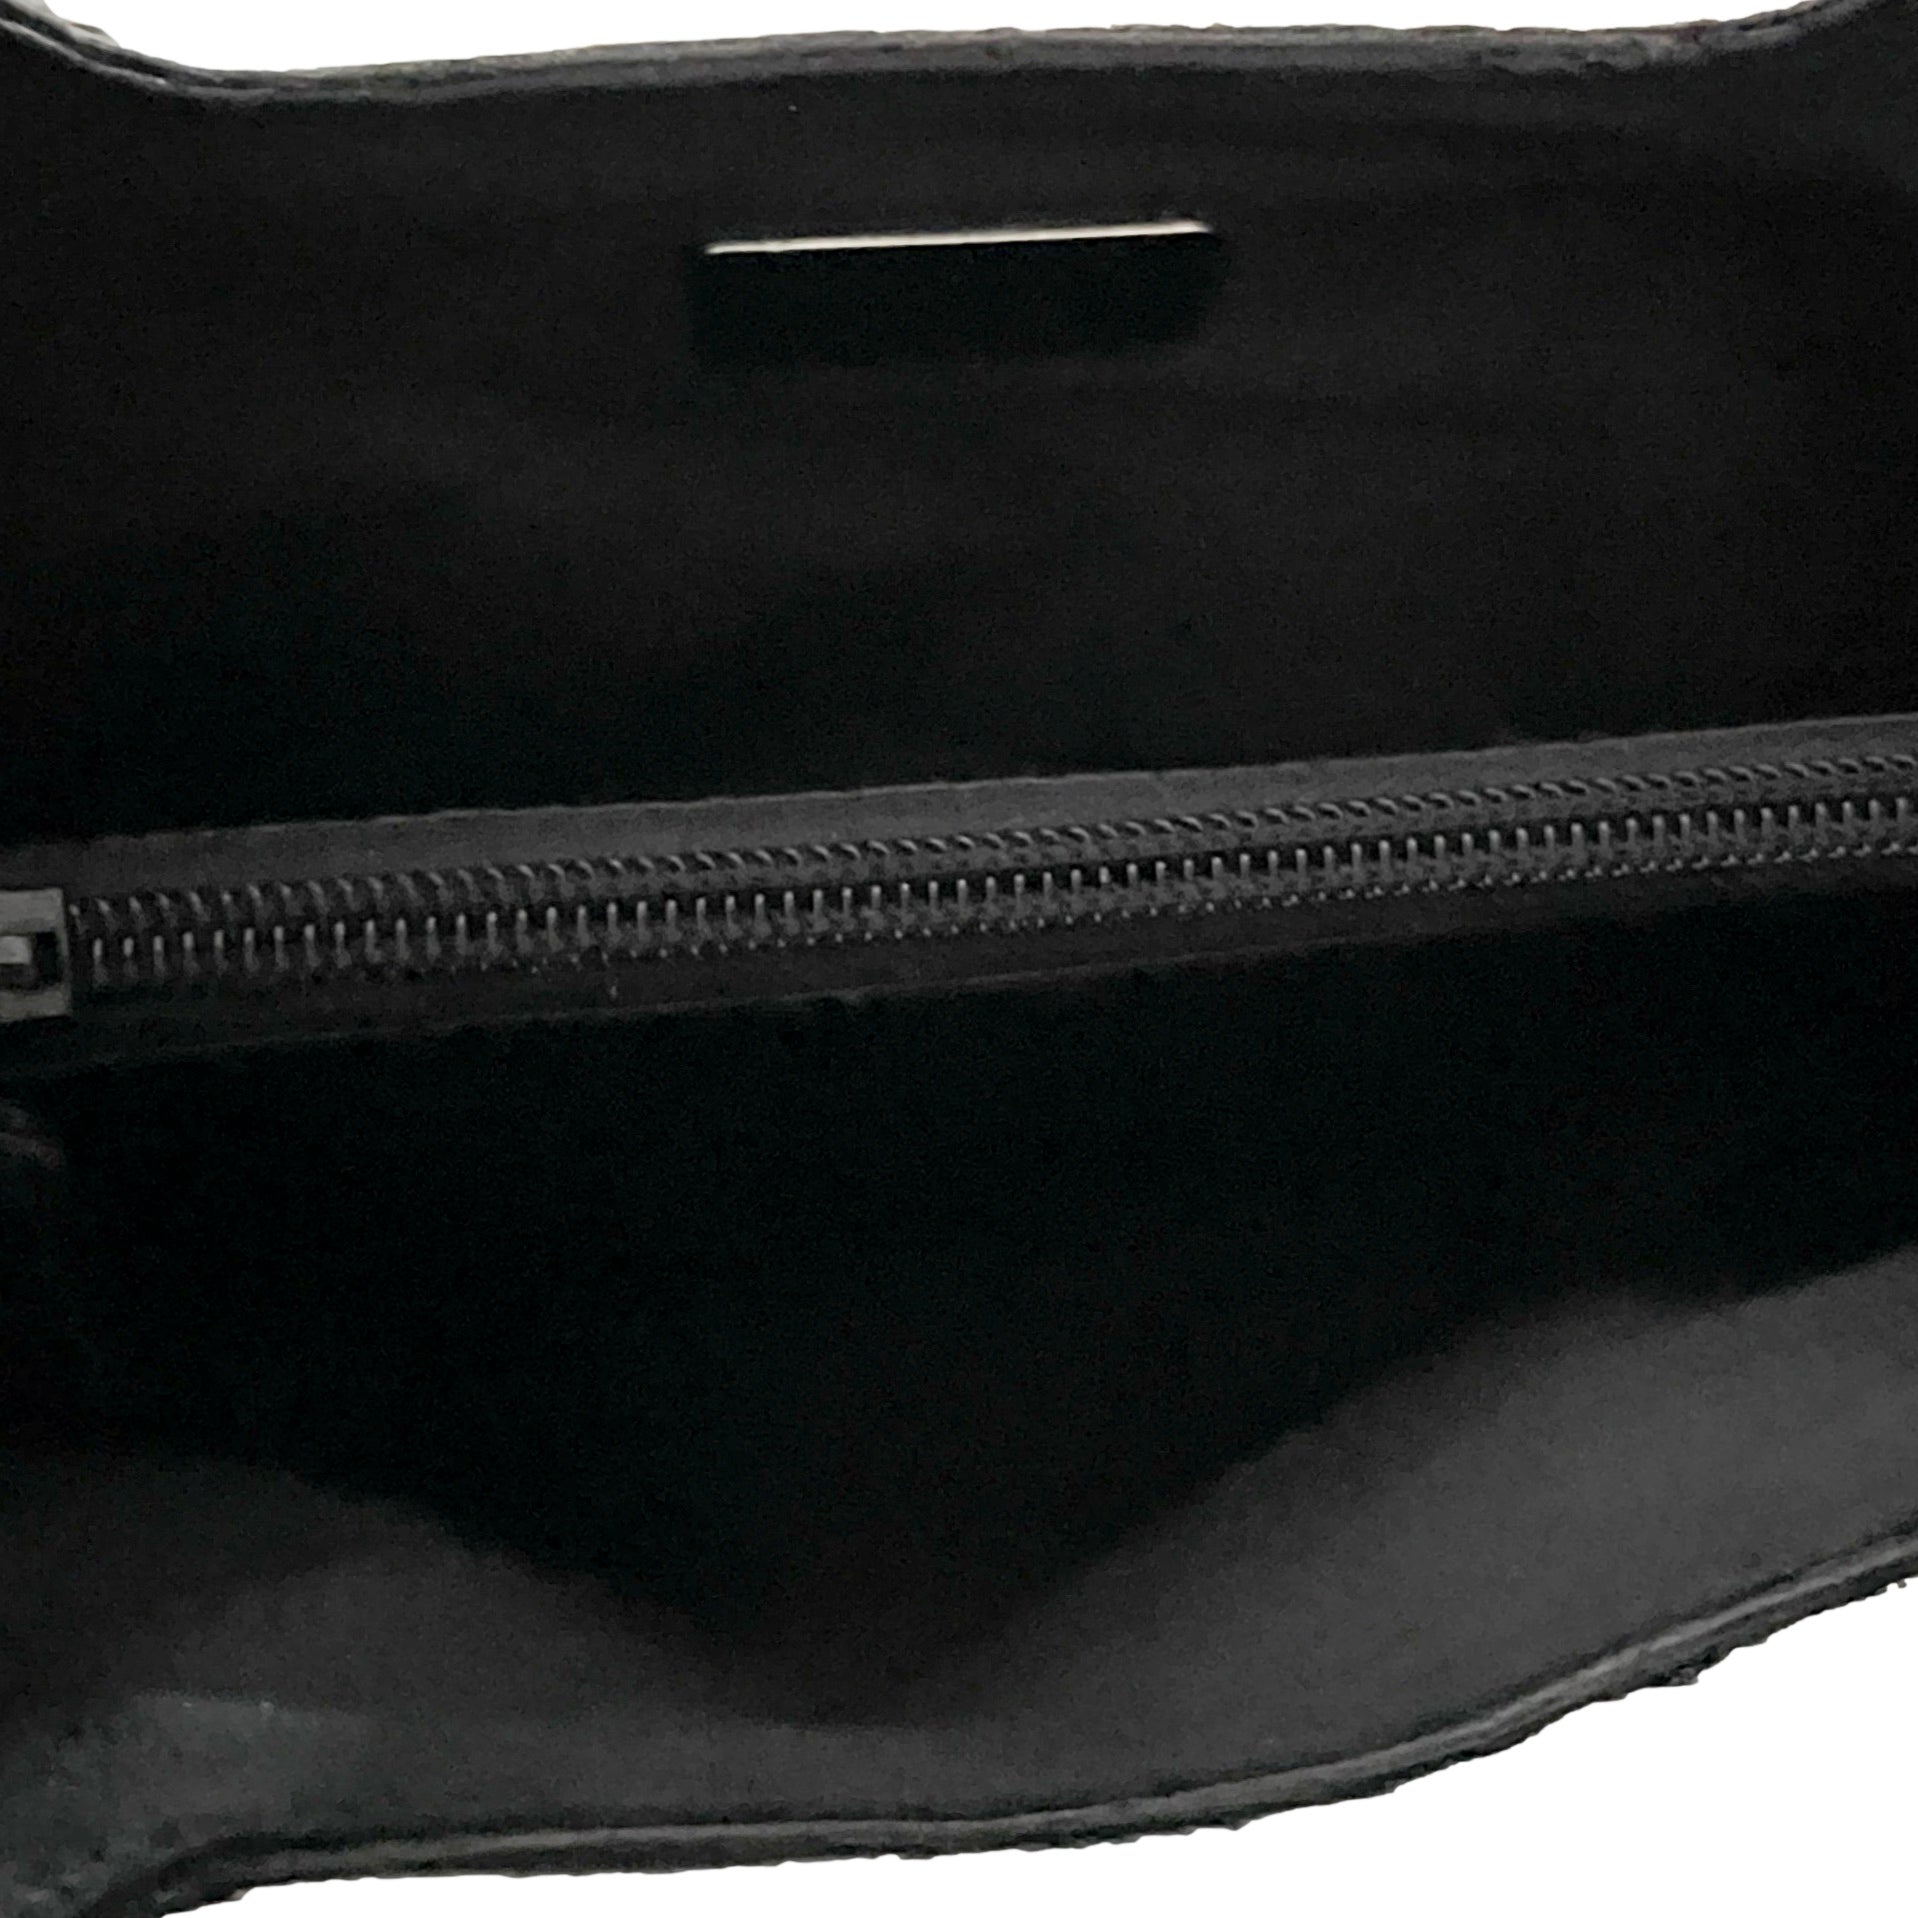 Prada Black Calf Hair Top Handle Bag - Handbags